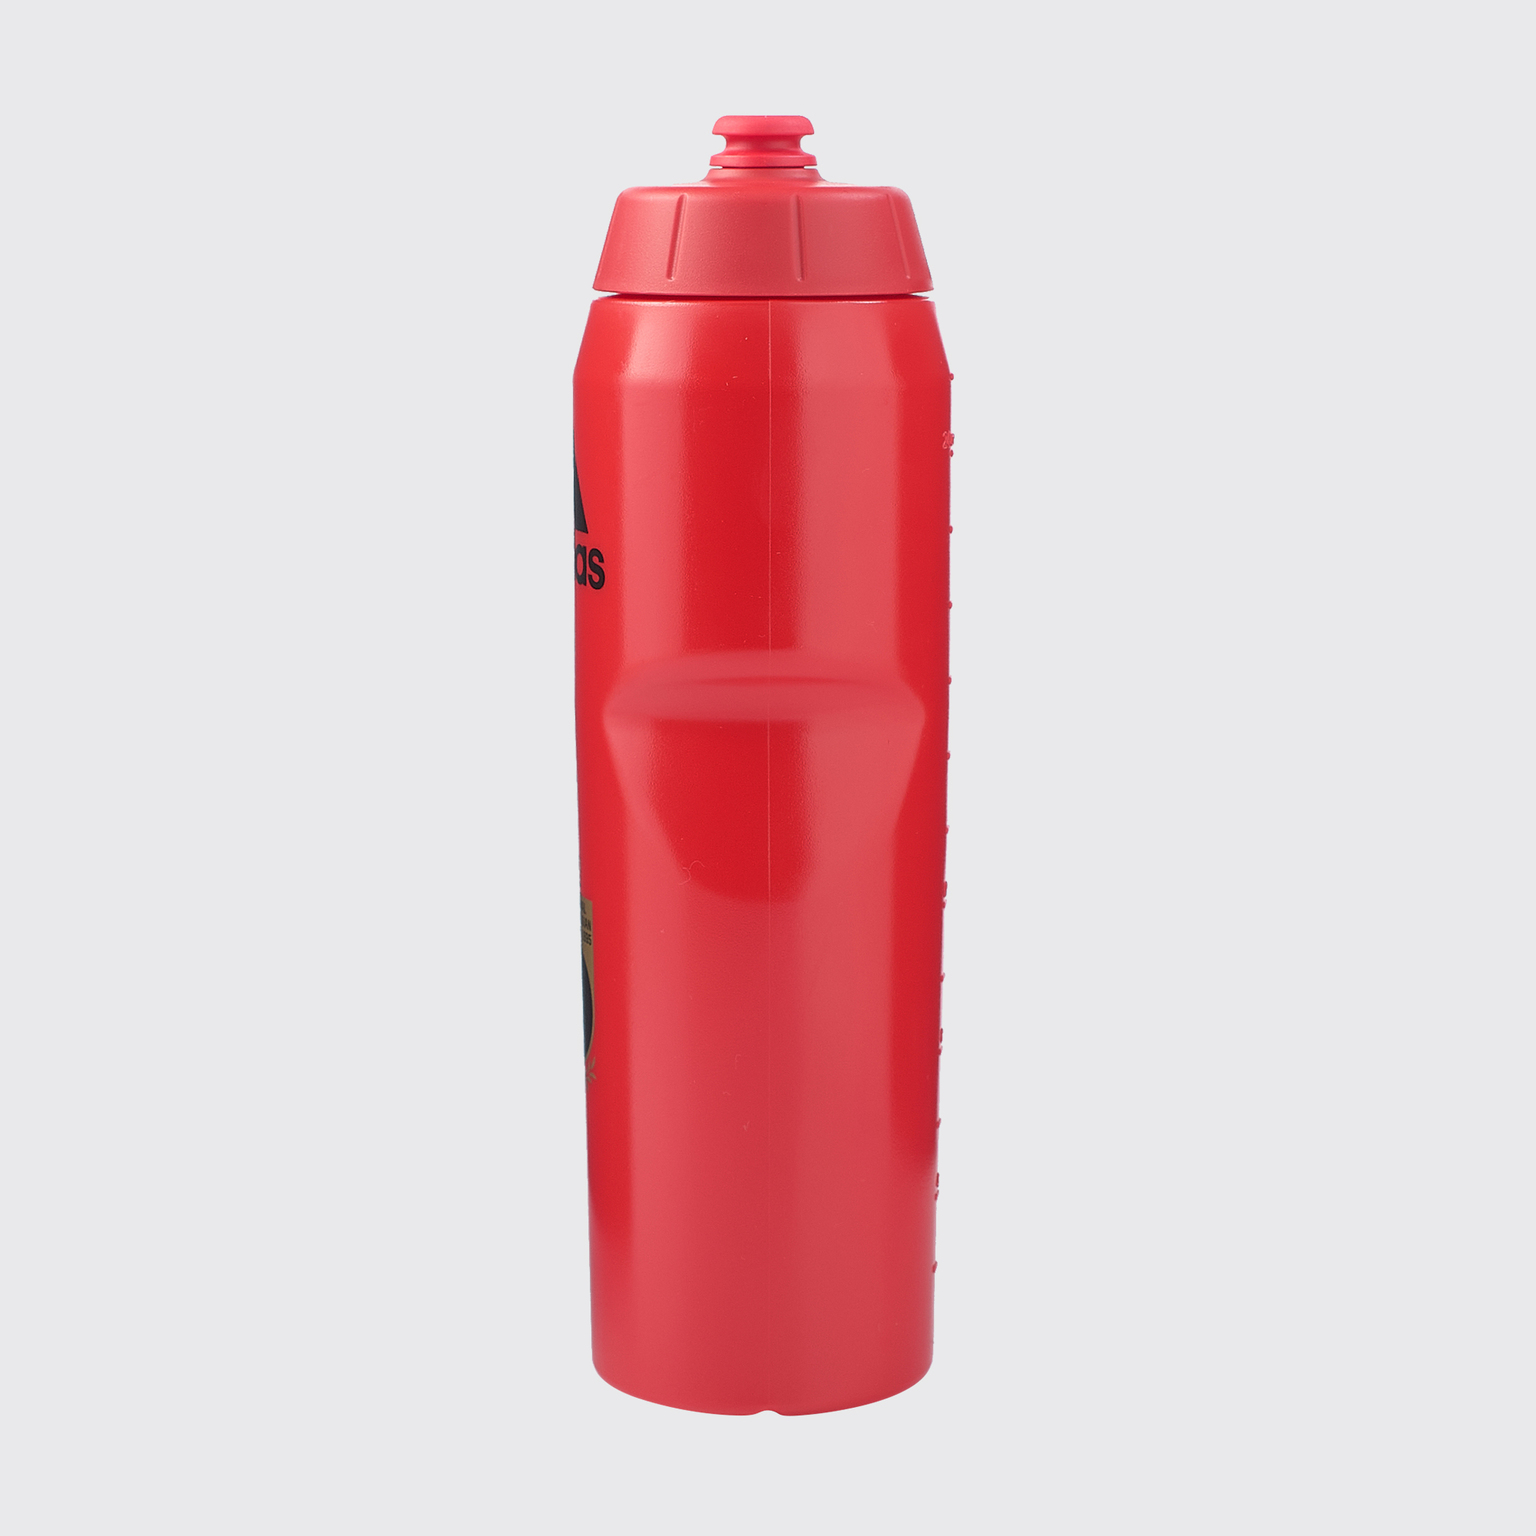 Бутылка для воды Adidas сборной Бельгии FJ0935